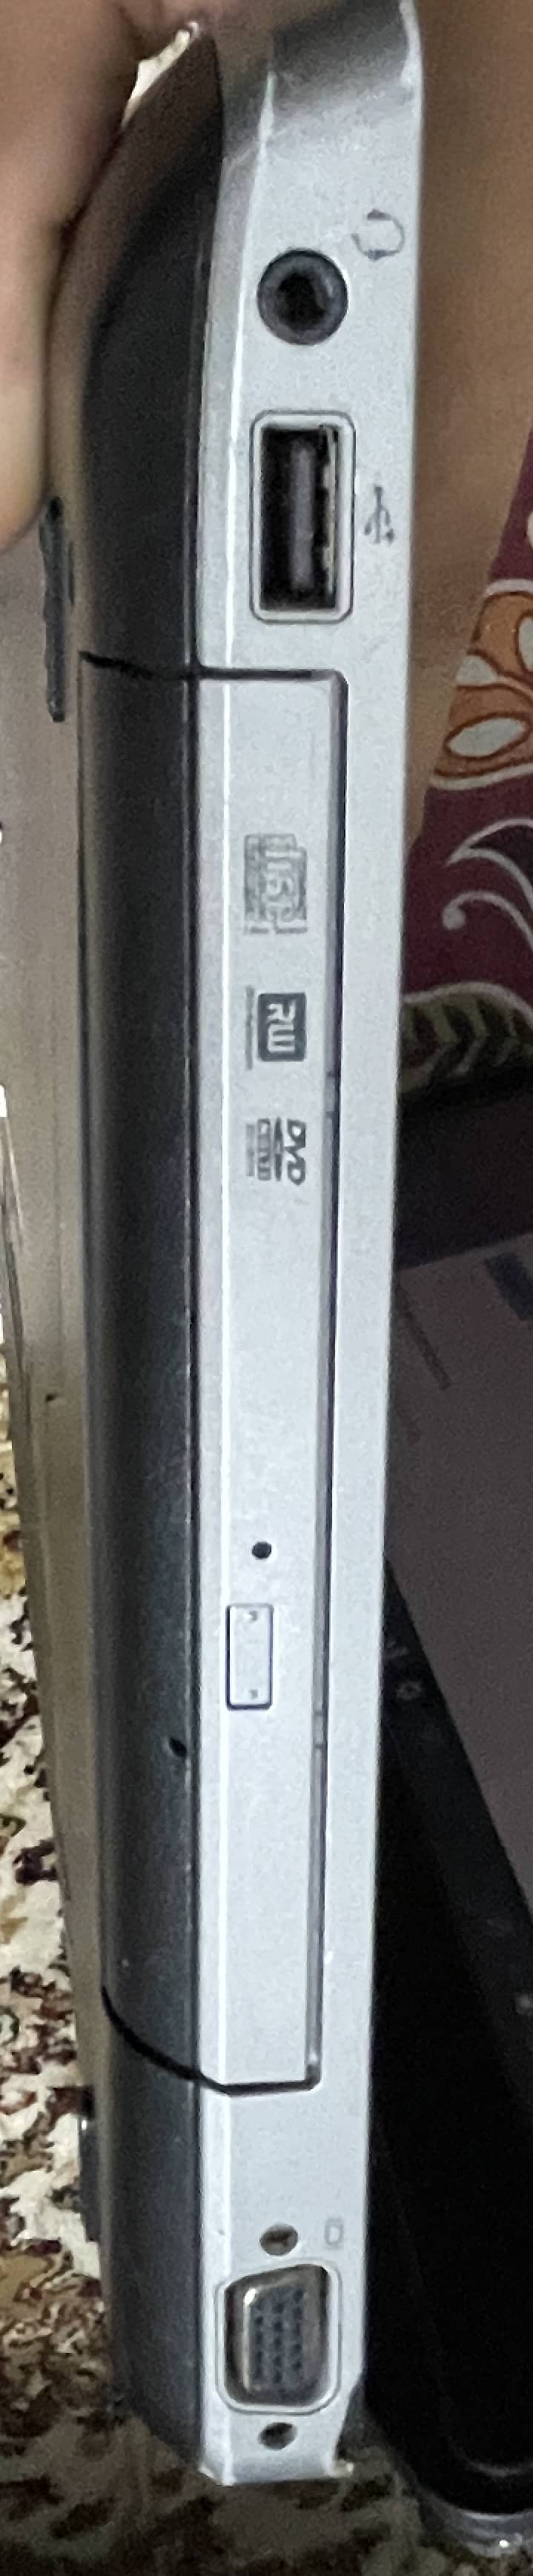 Dell laptop core i3 2nd gen 5